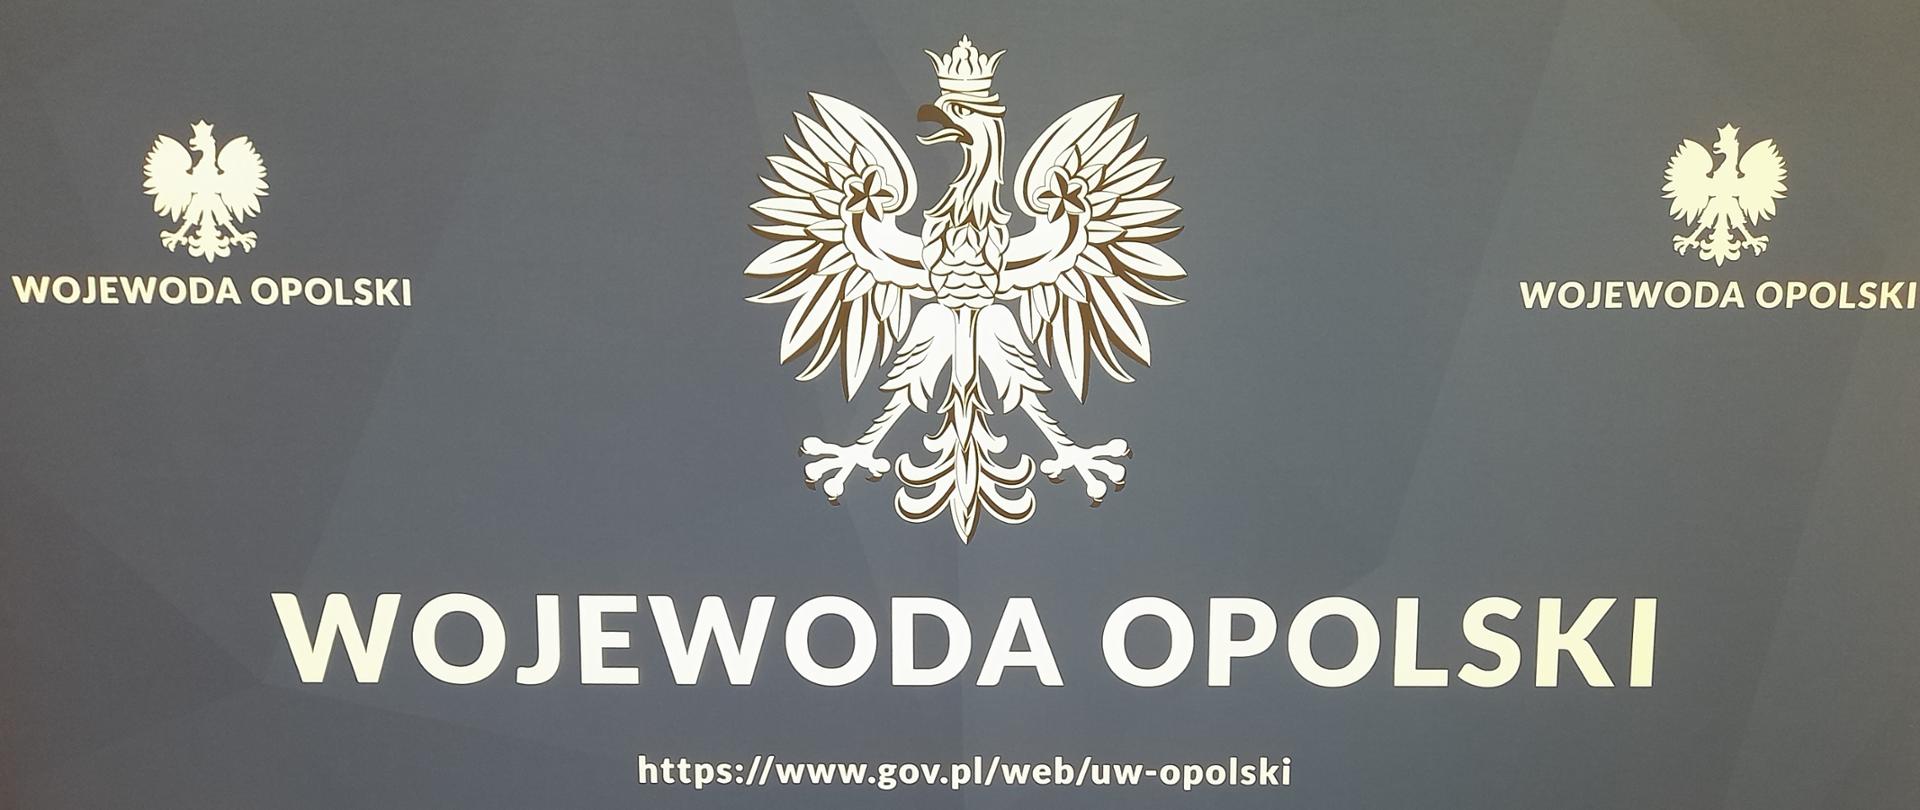 Niebieska plansza z godłem państwowym oraz napisem Wojewoda Opolski